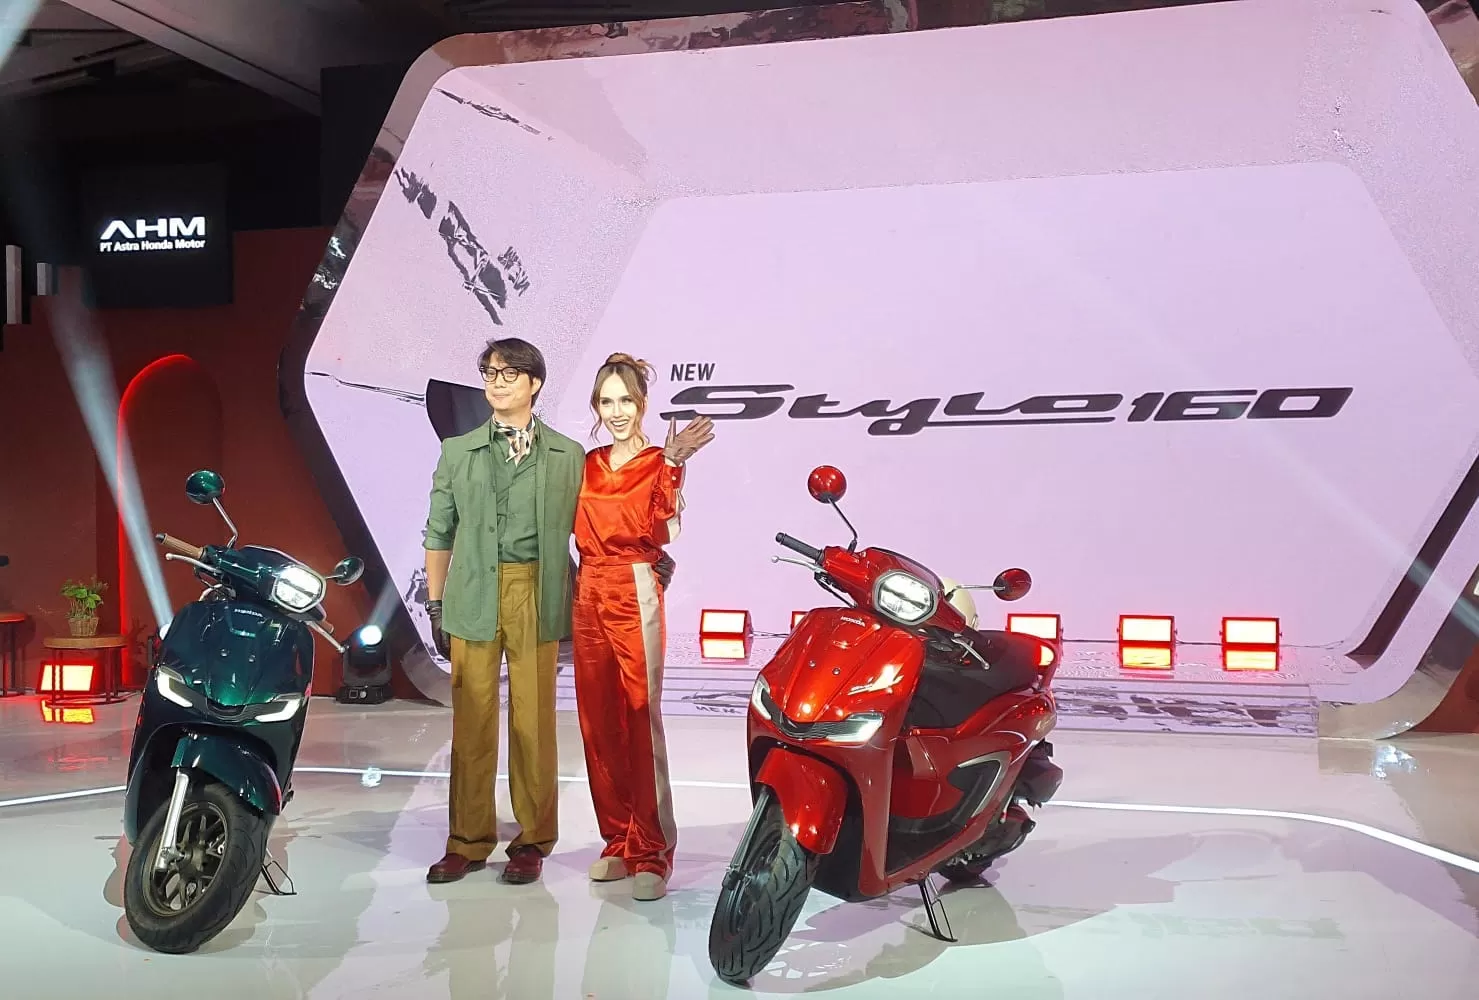 Honda Stylo 160 resmi hadir, motor matic retro di Indonesia makin banyak pilihan